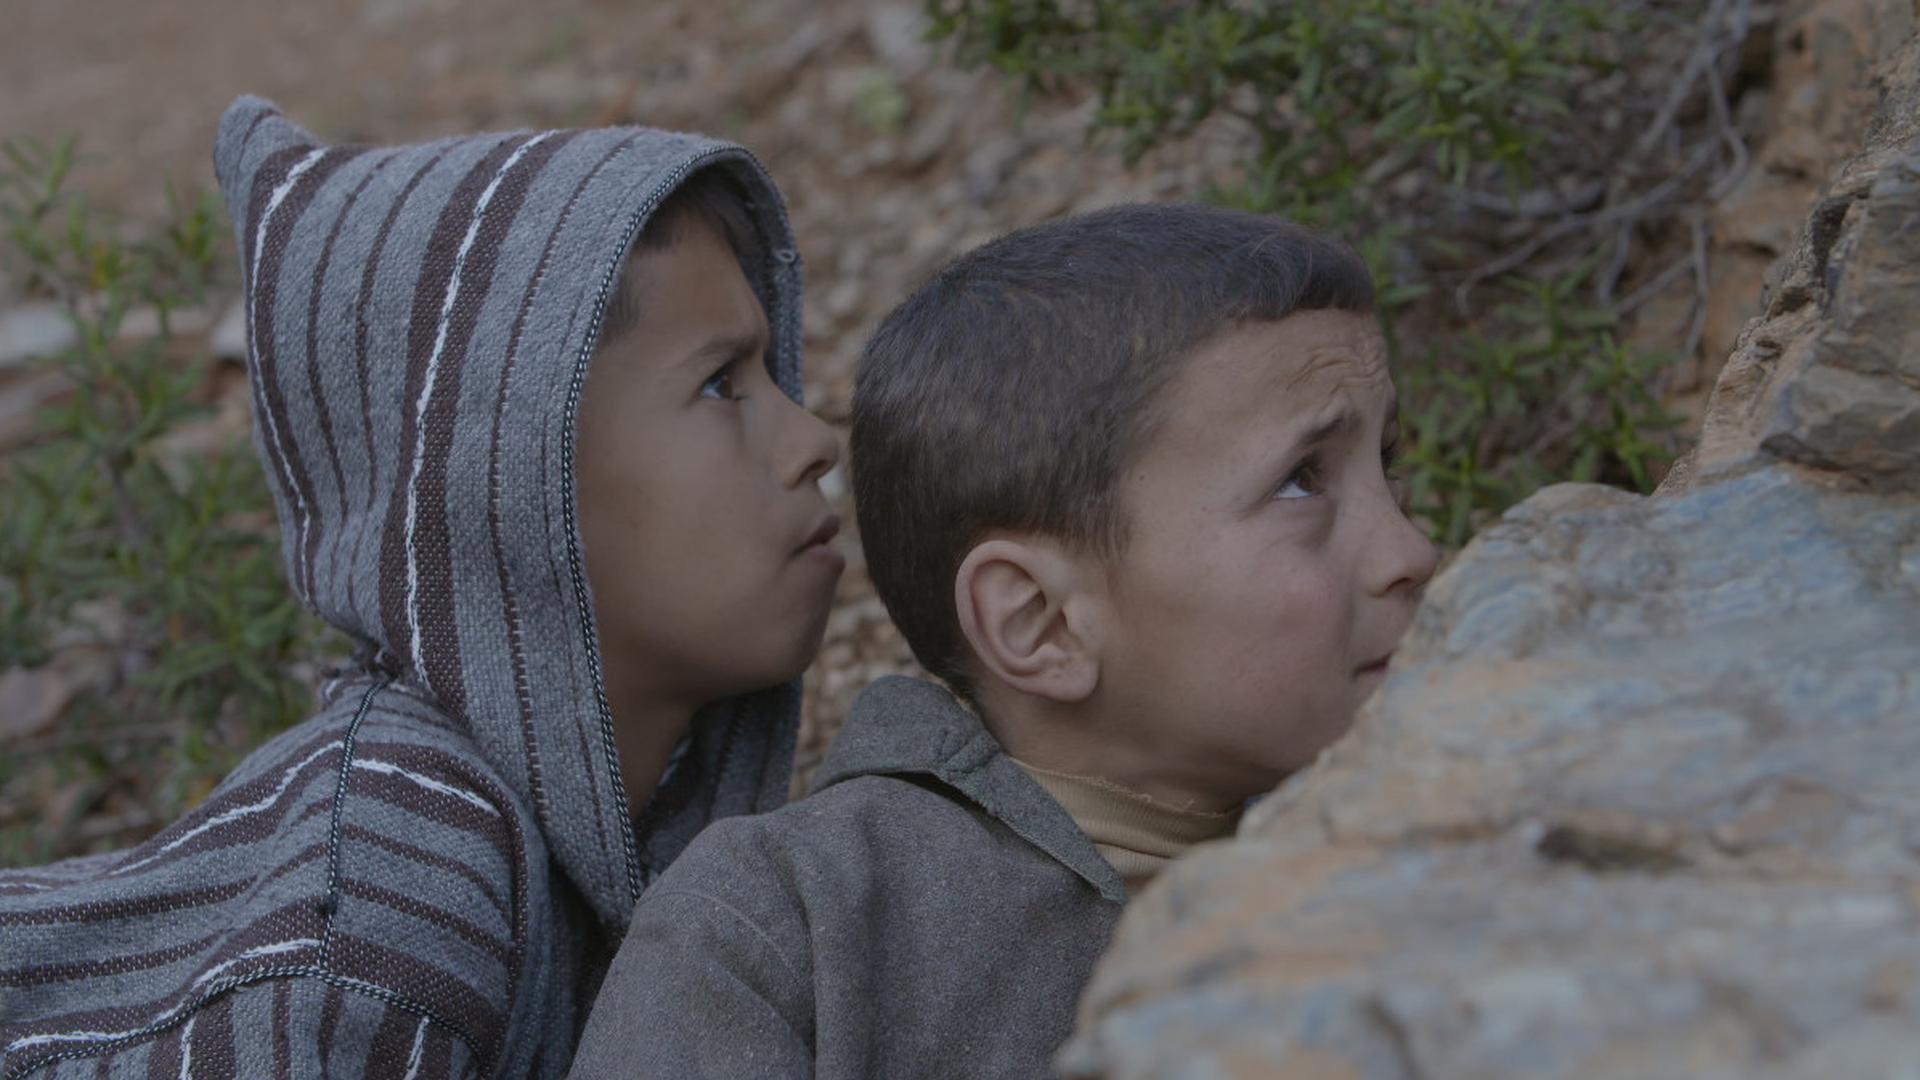 Der marokkanische Film „Bouchaib“ befasst sich mit Identität und Zerrissenheit zwischen den Kulturen.